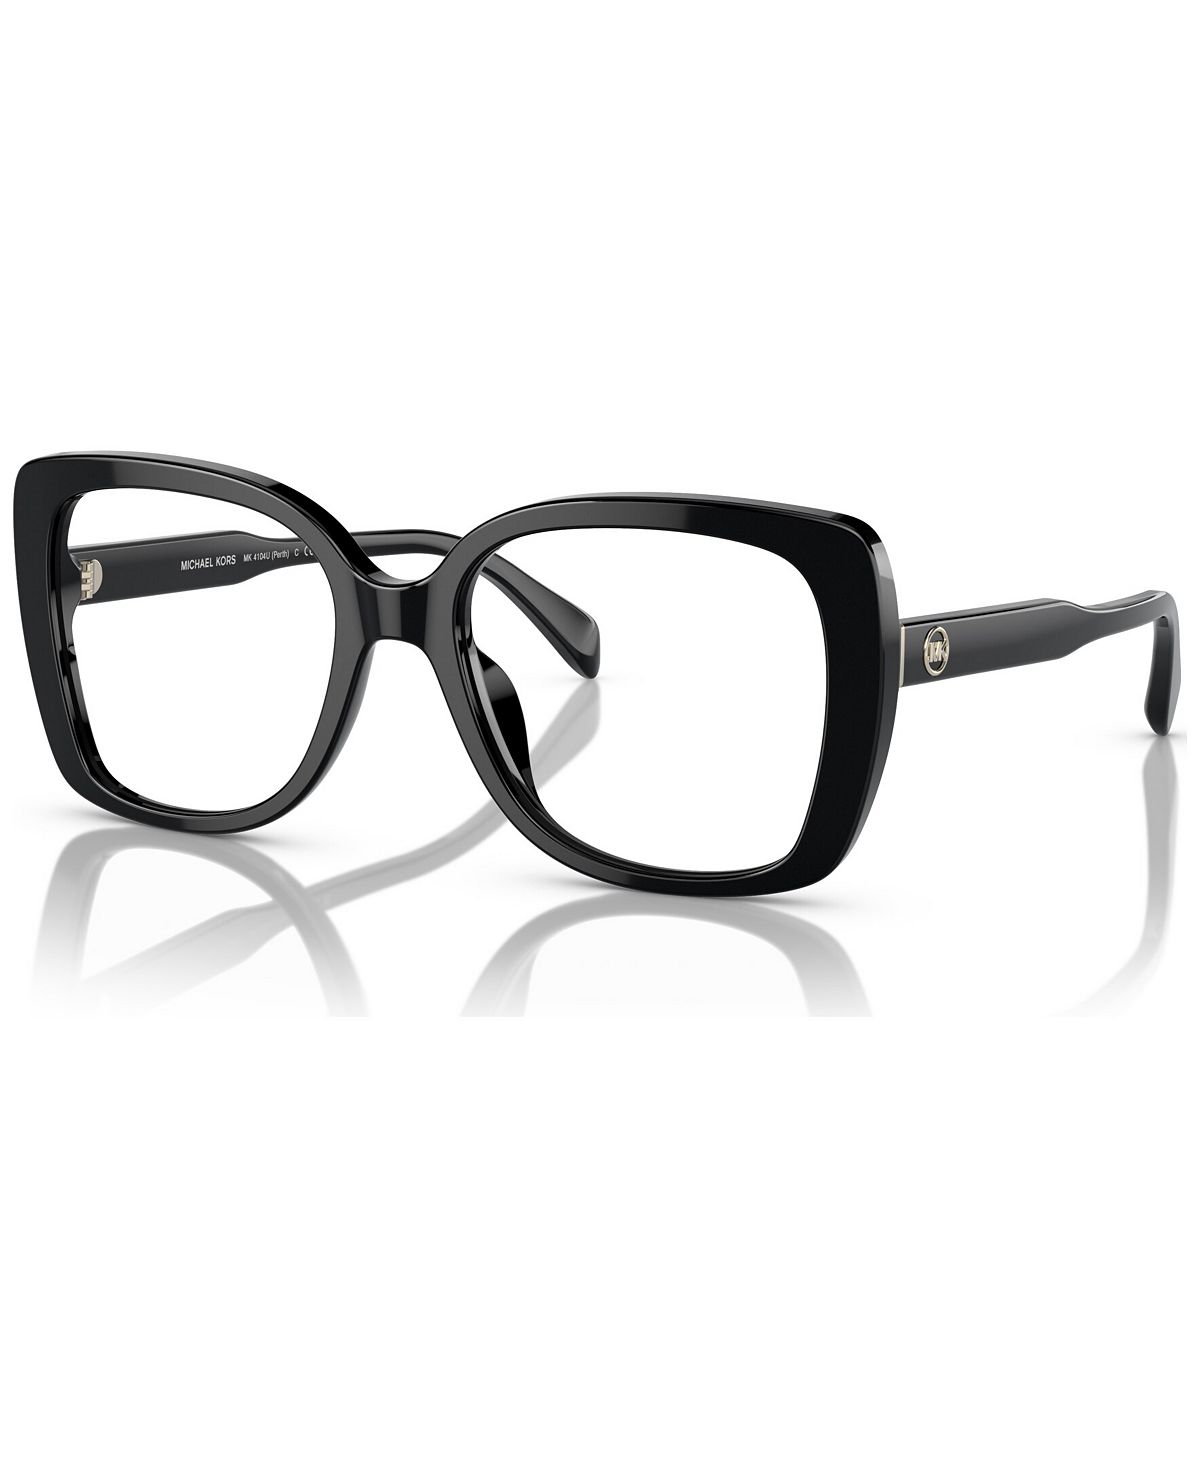 Женские квадратные очки, MK4104U 53 Michael Kors, черный